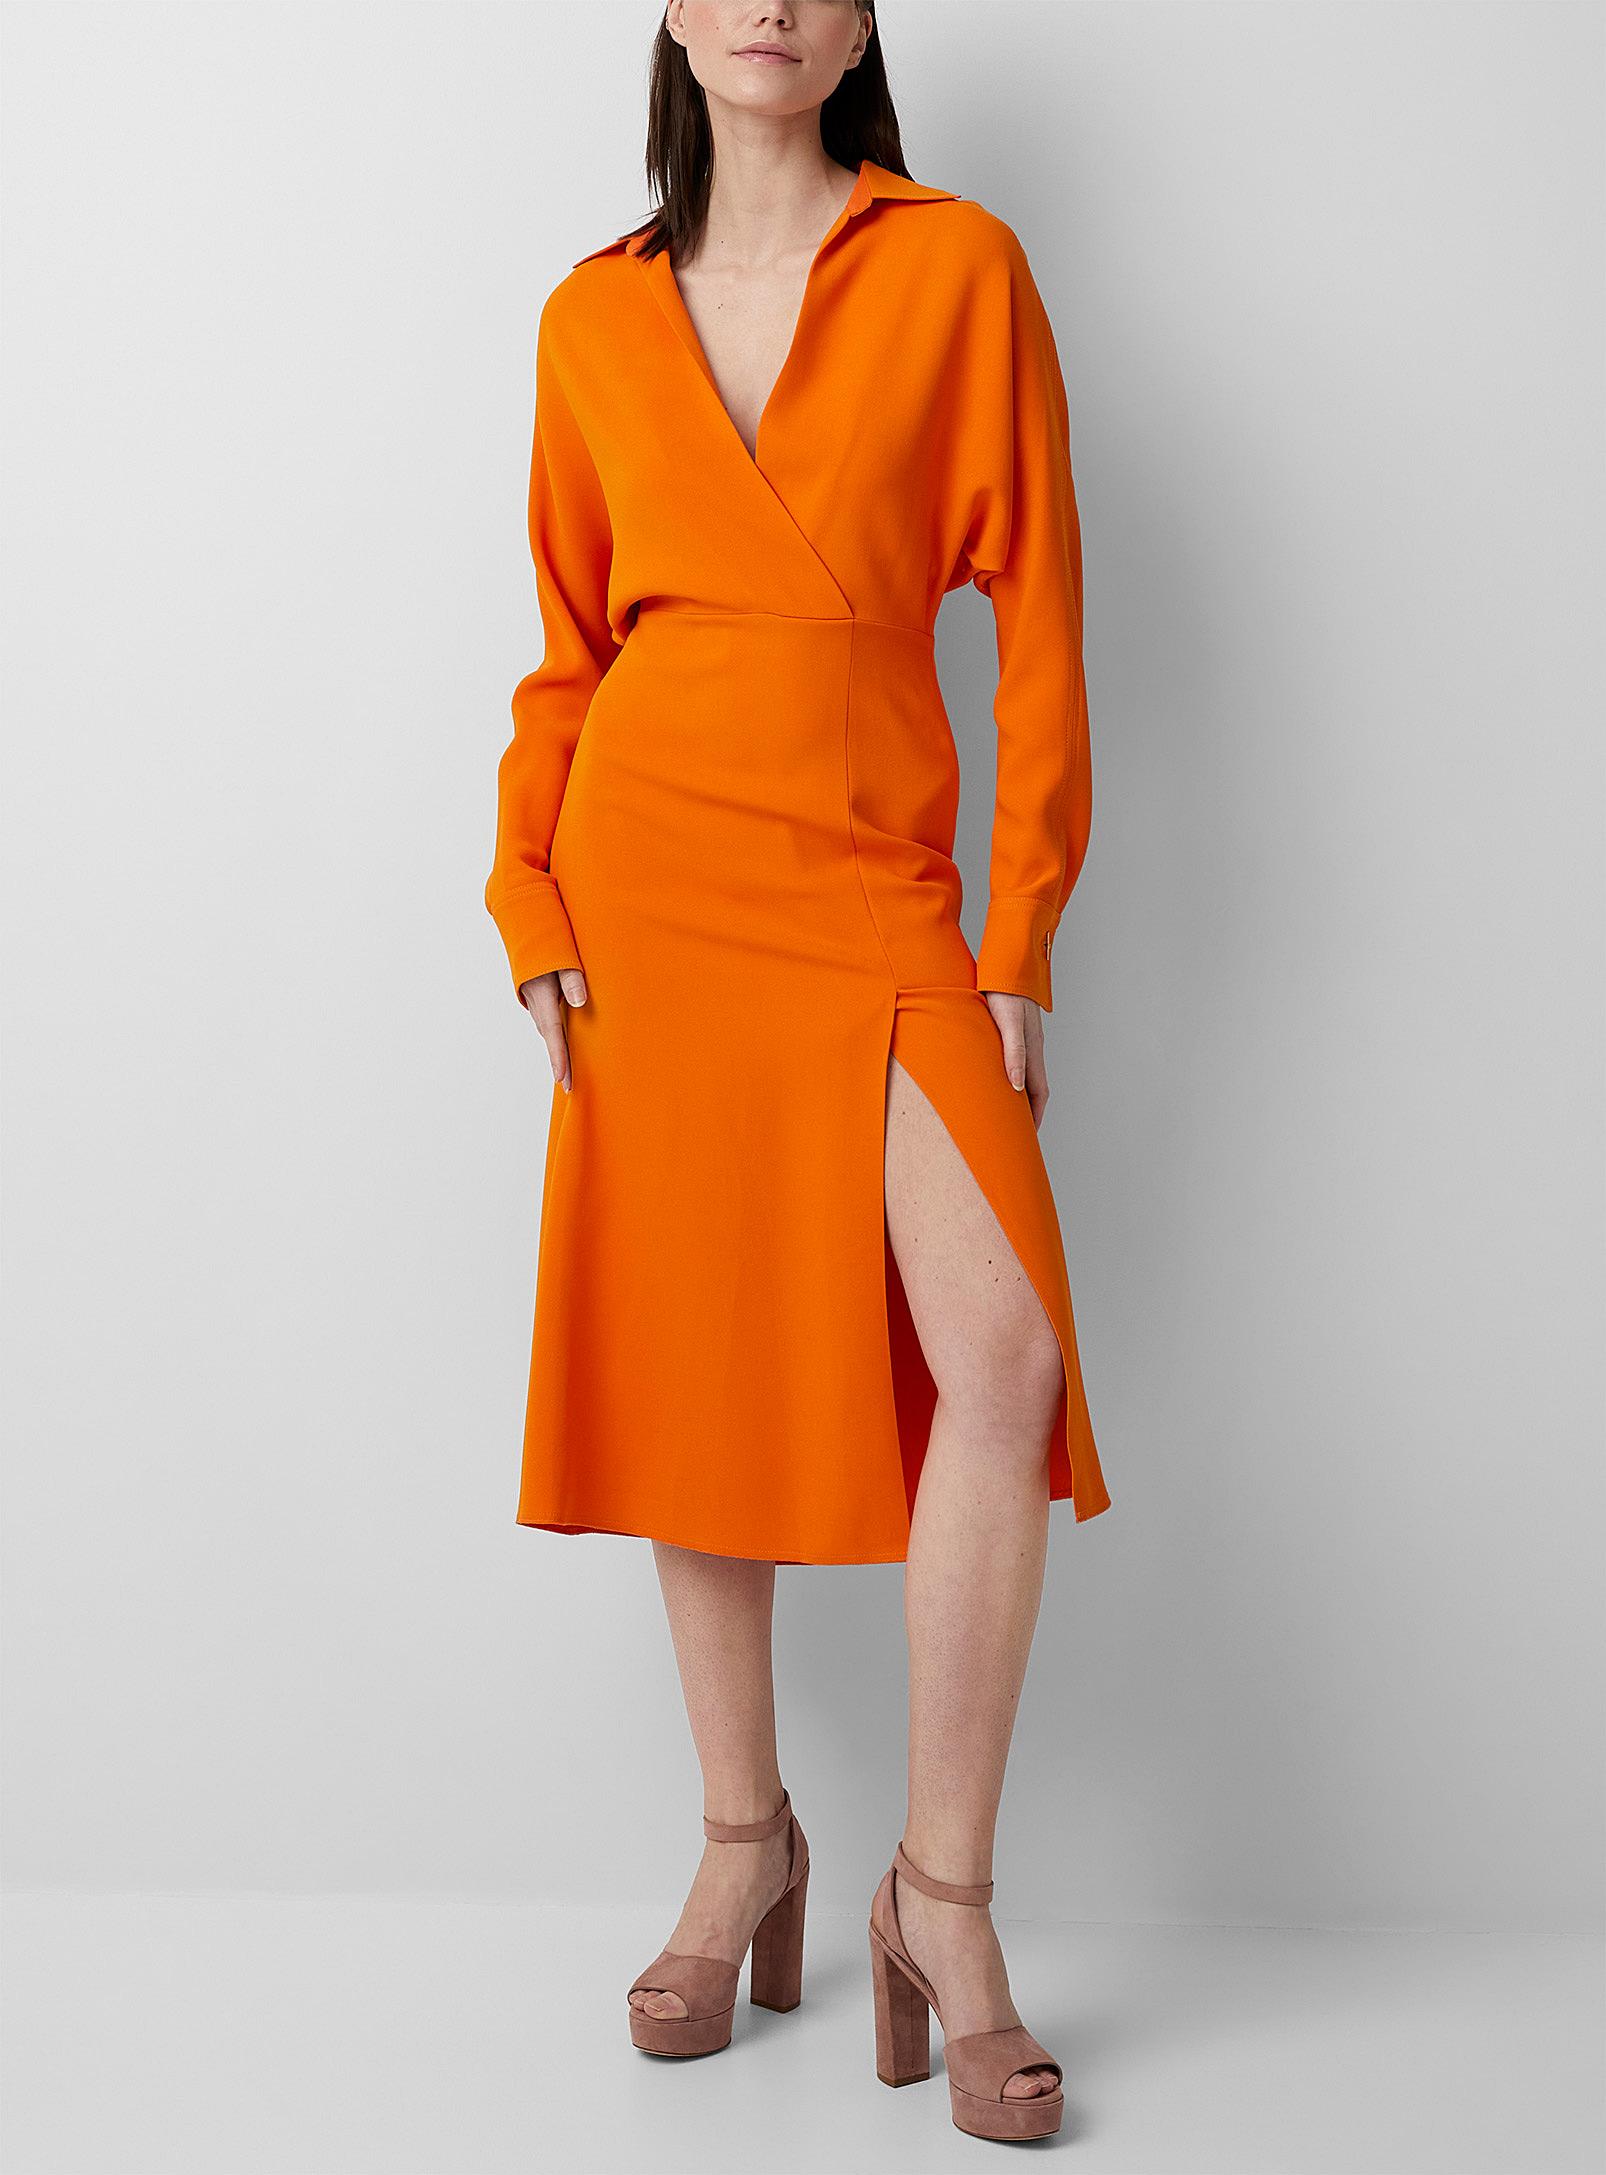 Victoria Beckham Sweetheart Neckline Orange Dress | Lyst